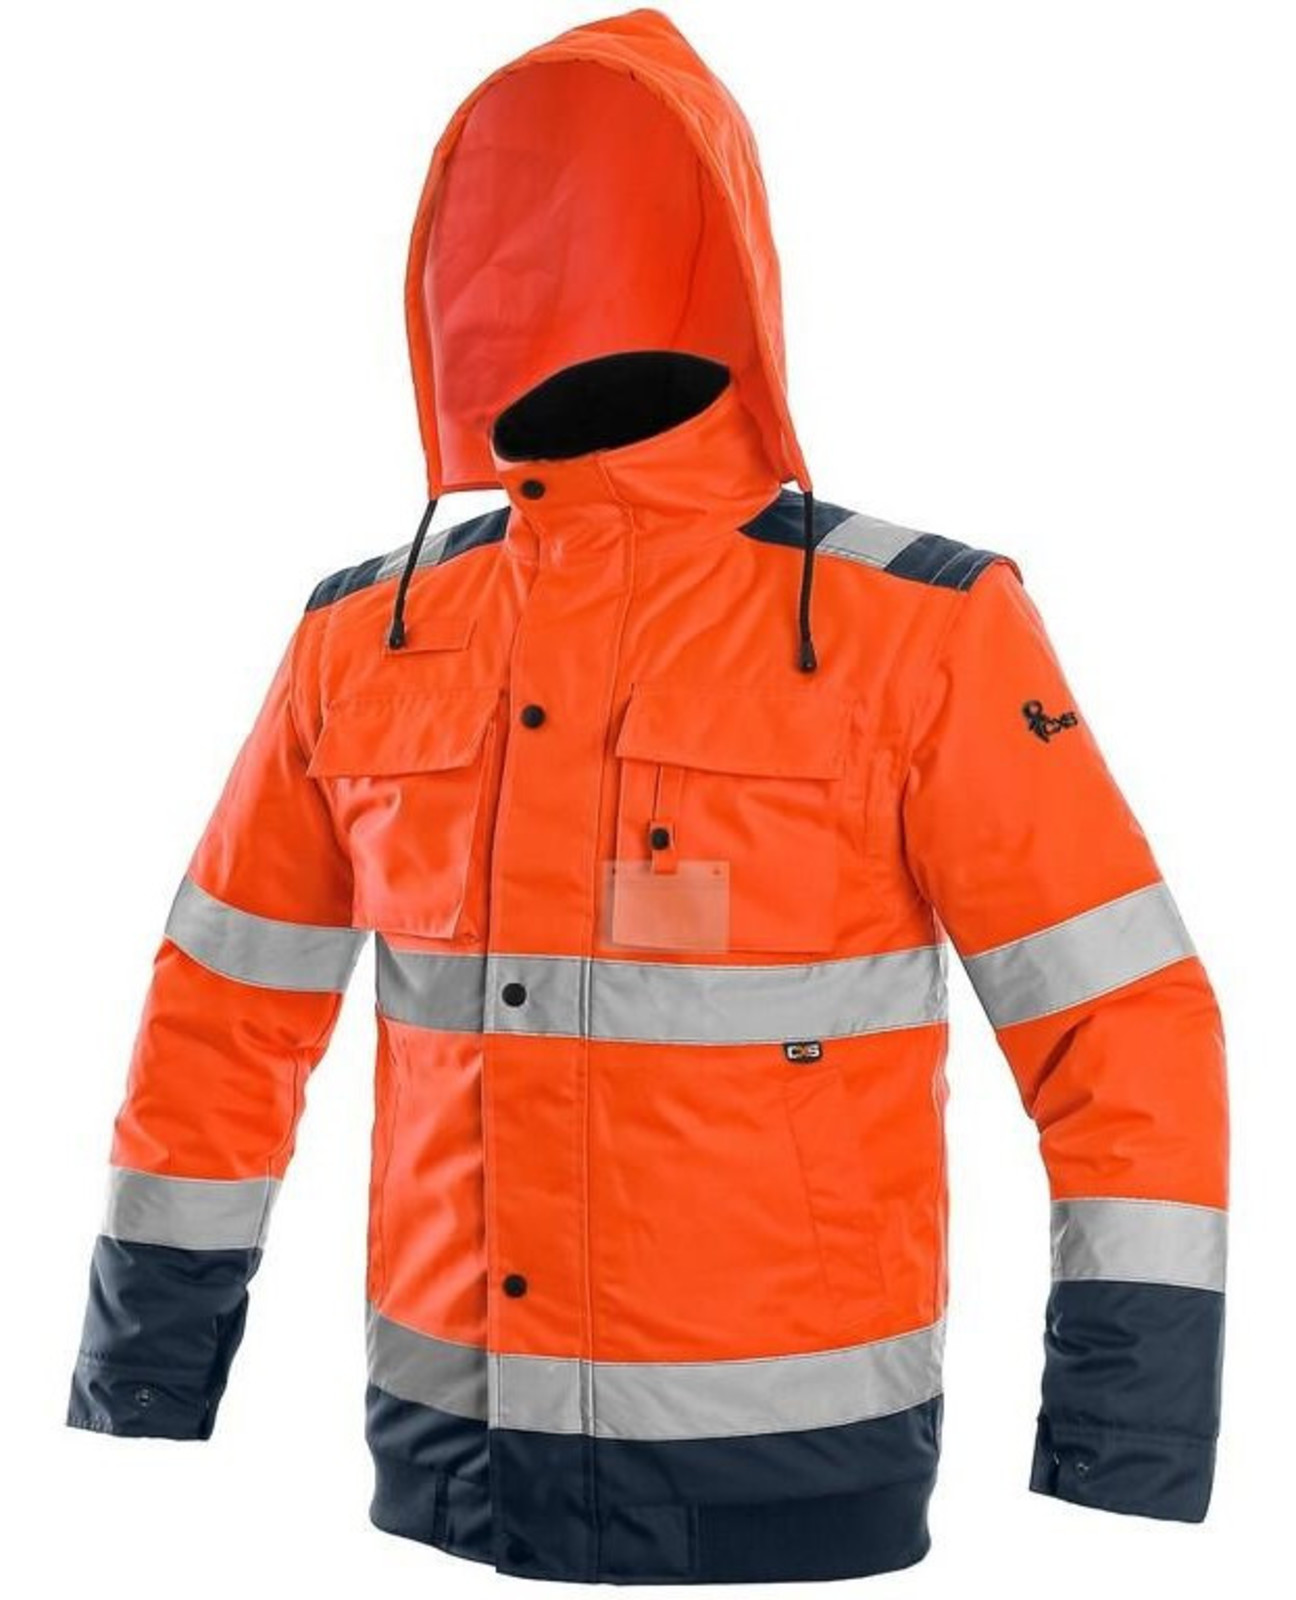 Zimná reflexná bunda CXS Luton 2v1 - veľkosť: 3XL, farba: oranžová/navy